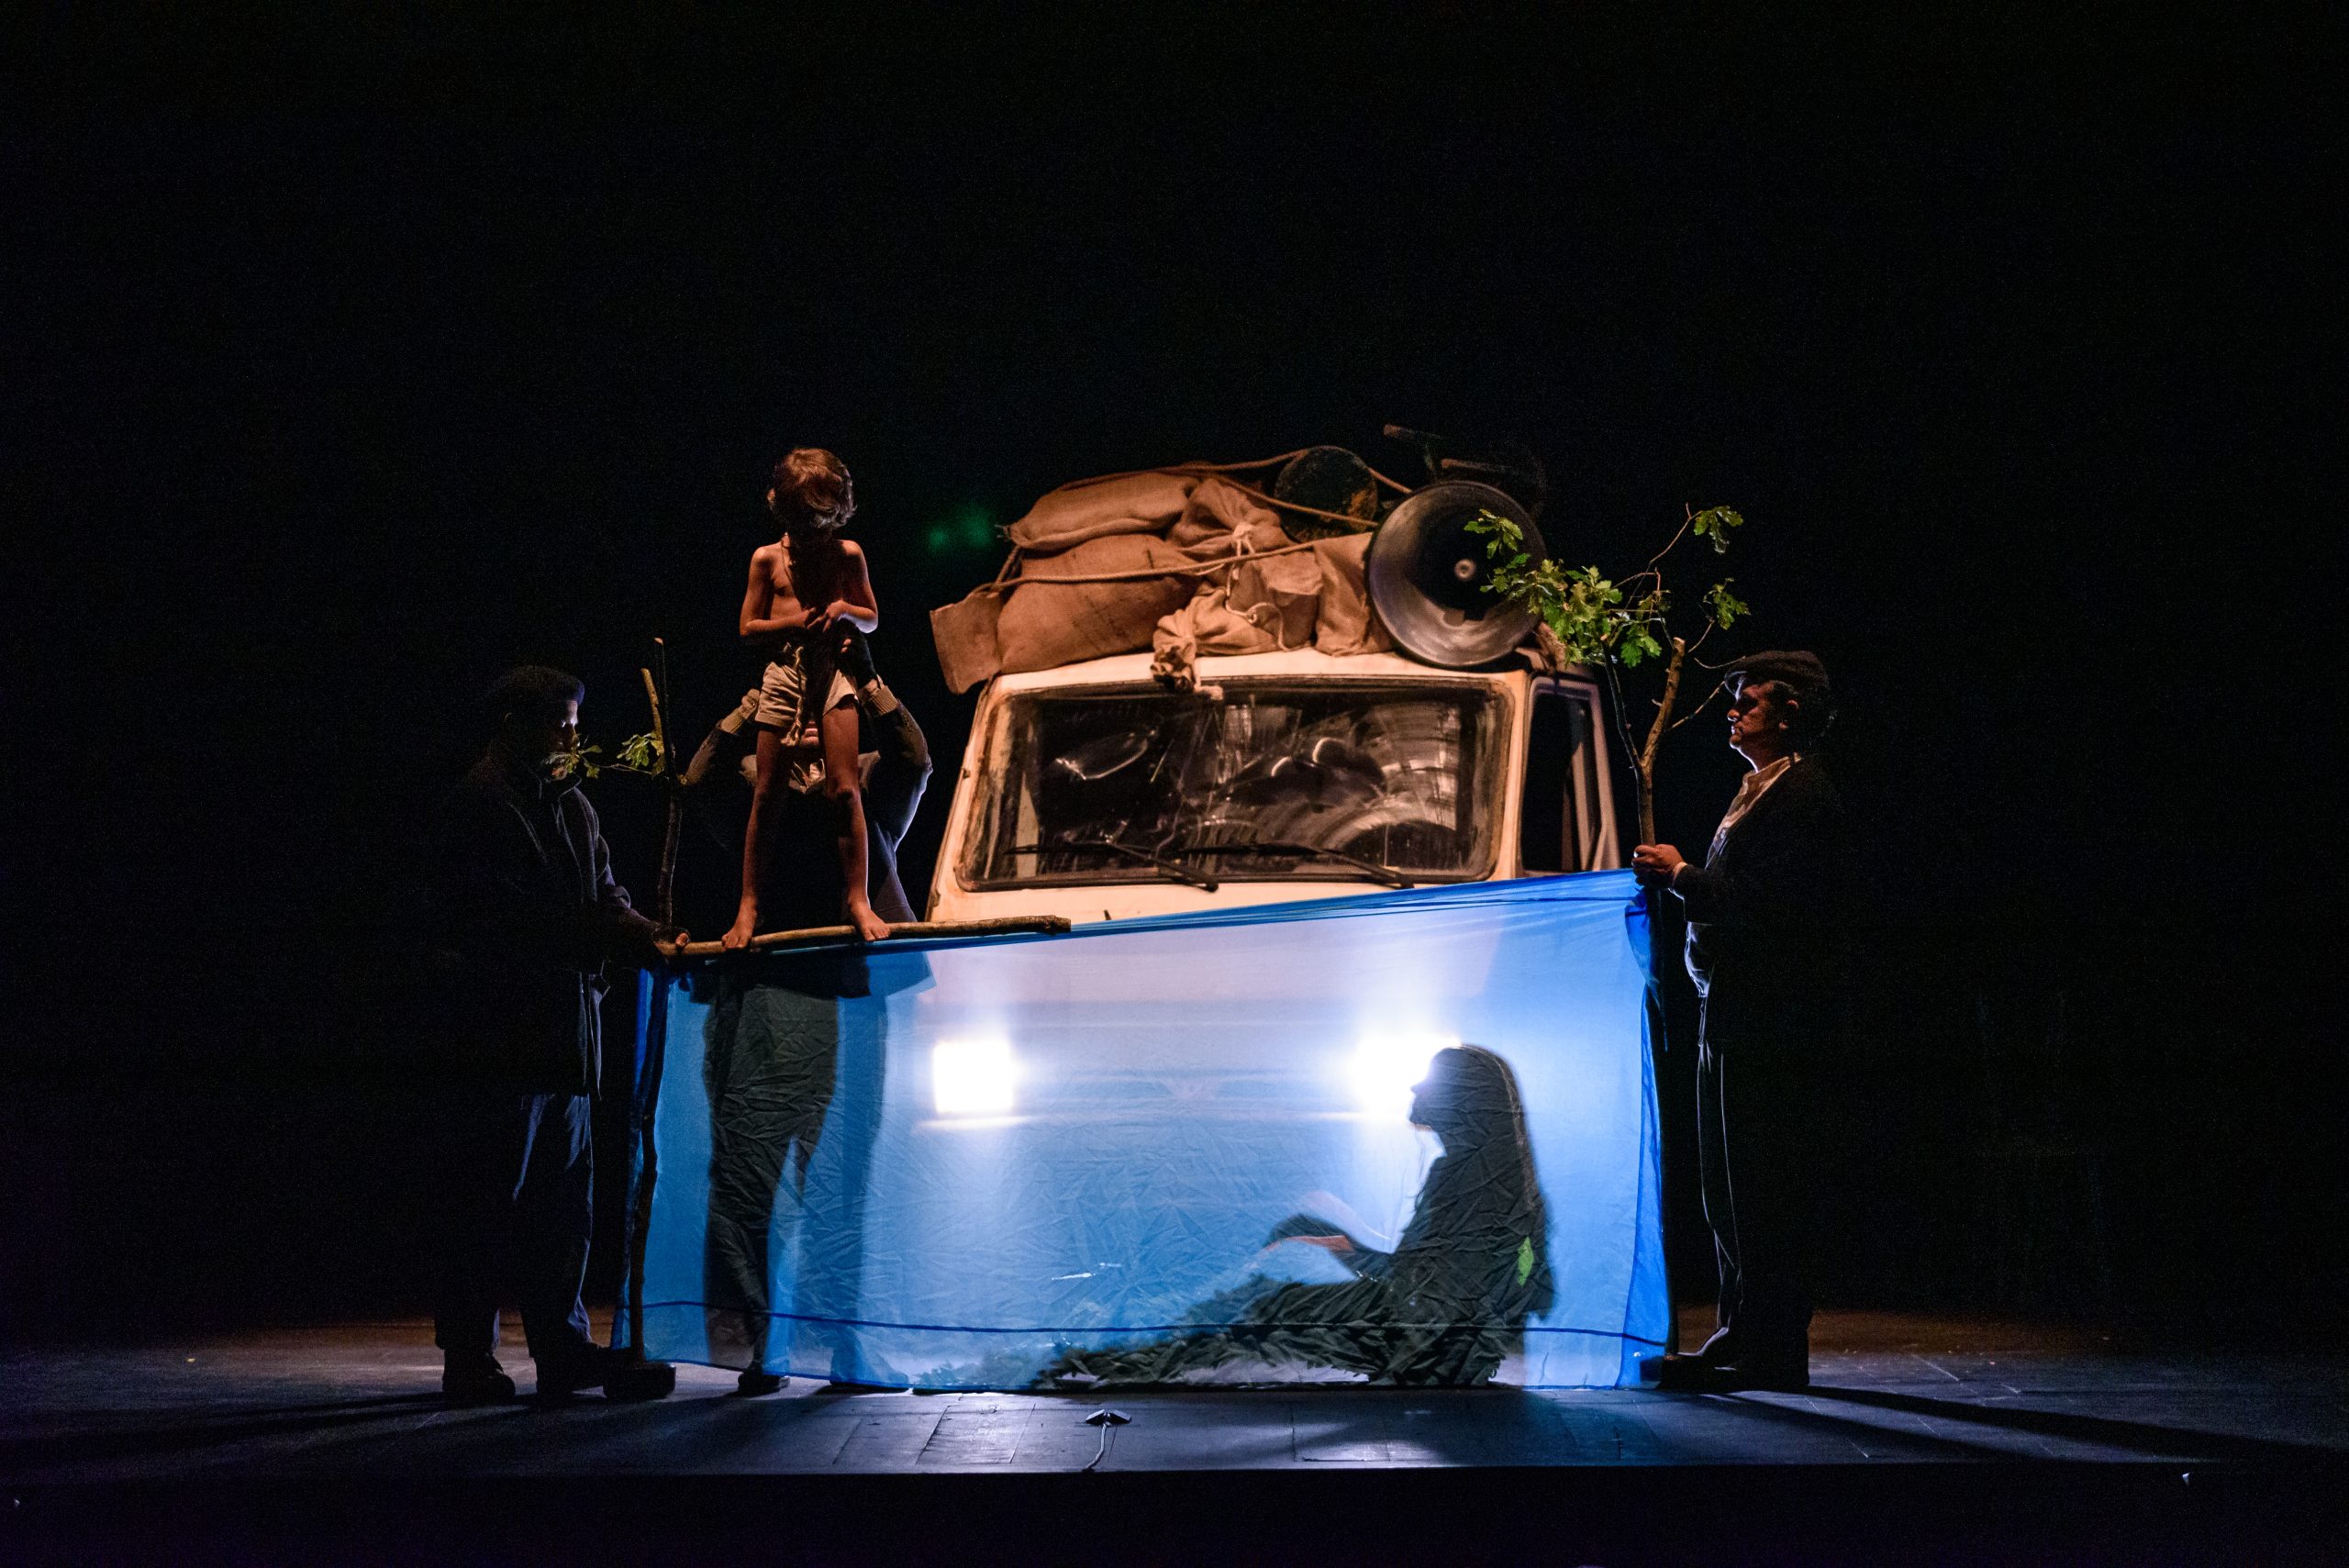 Teatro de Balugas vence prémio internacional com a peça “A Furgoneta”